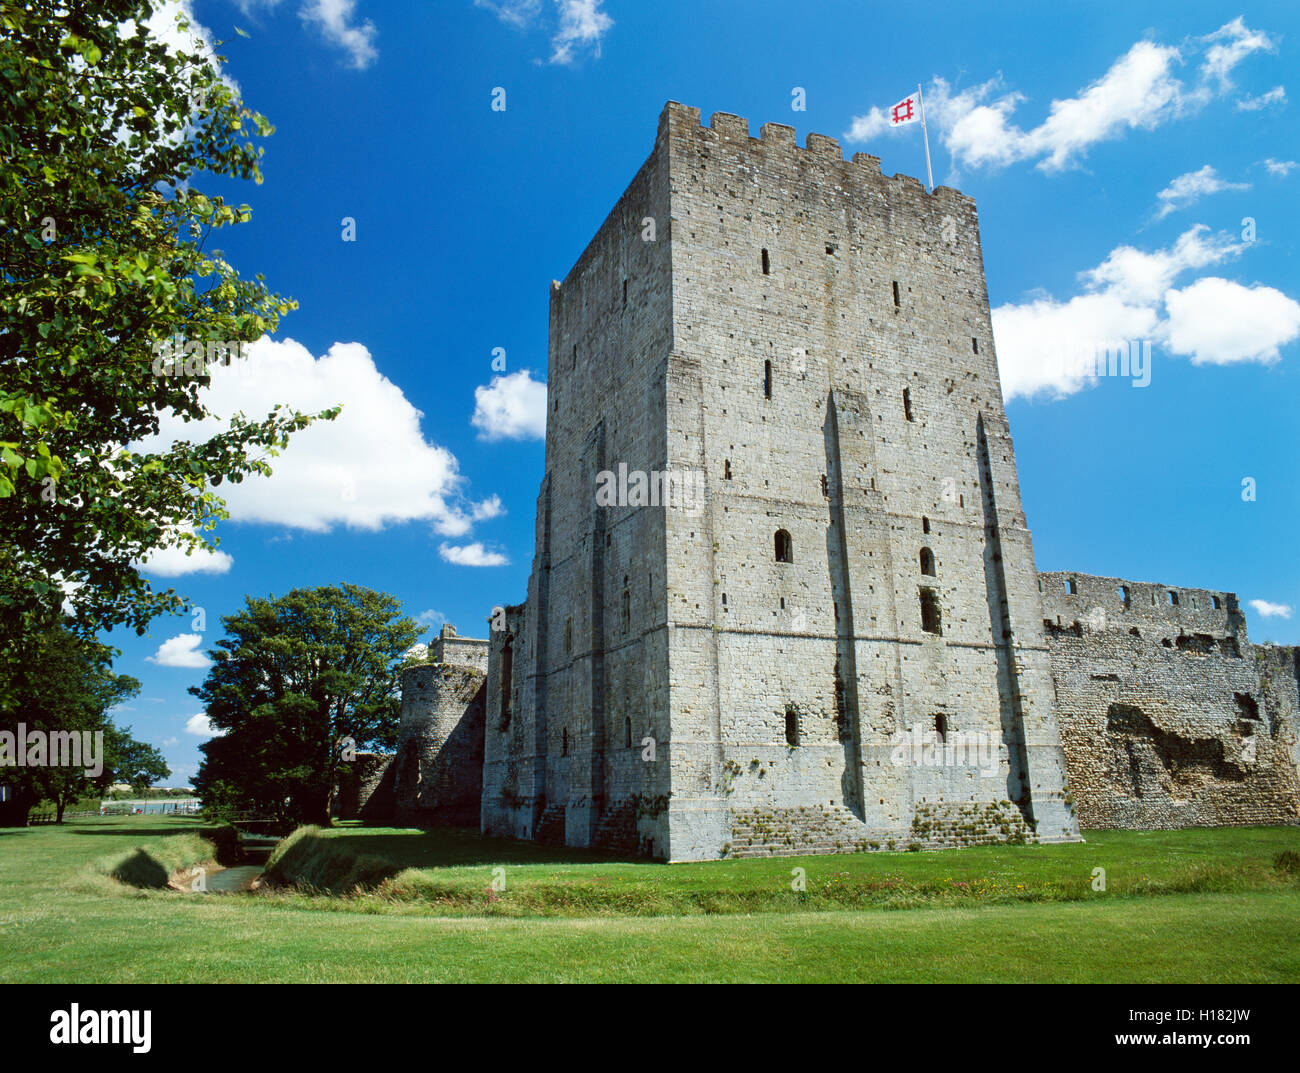 Die rechteckige normannische Burg halten an der nordwestlichen Ecke des Römerkastells Shore, Portchester Castle, Portsmouth Harbour, Hampshire, England, UK Stockfoto